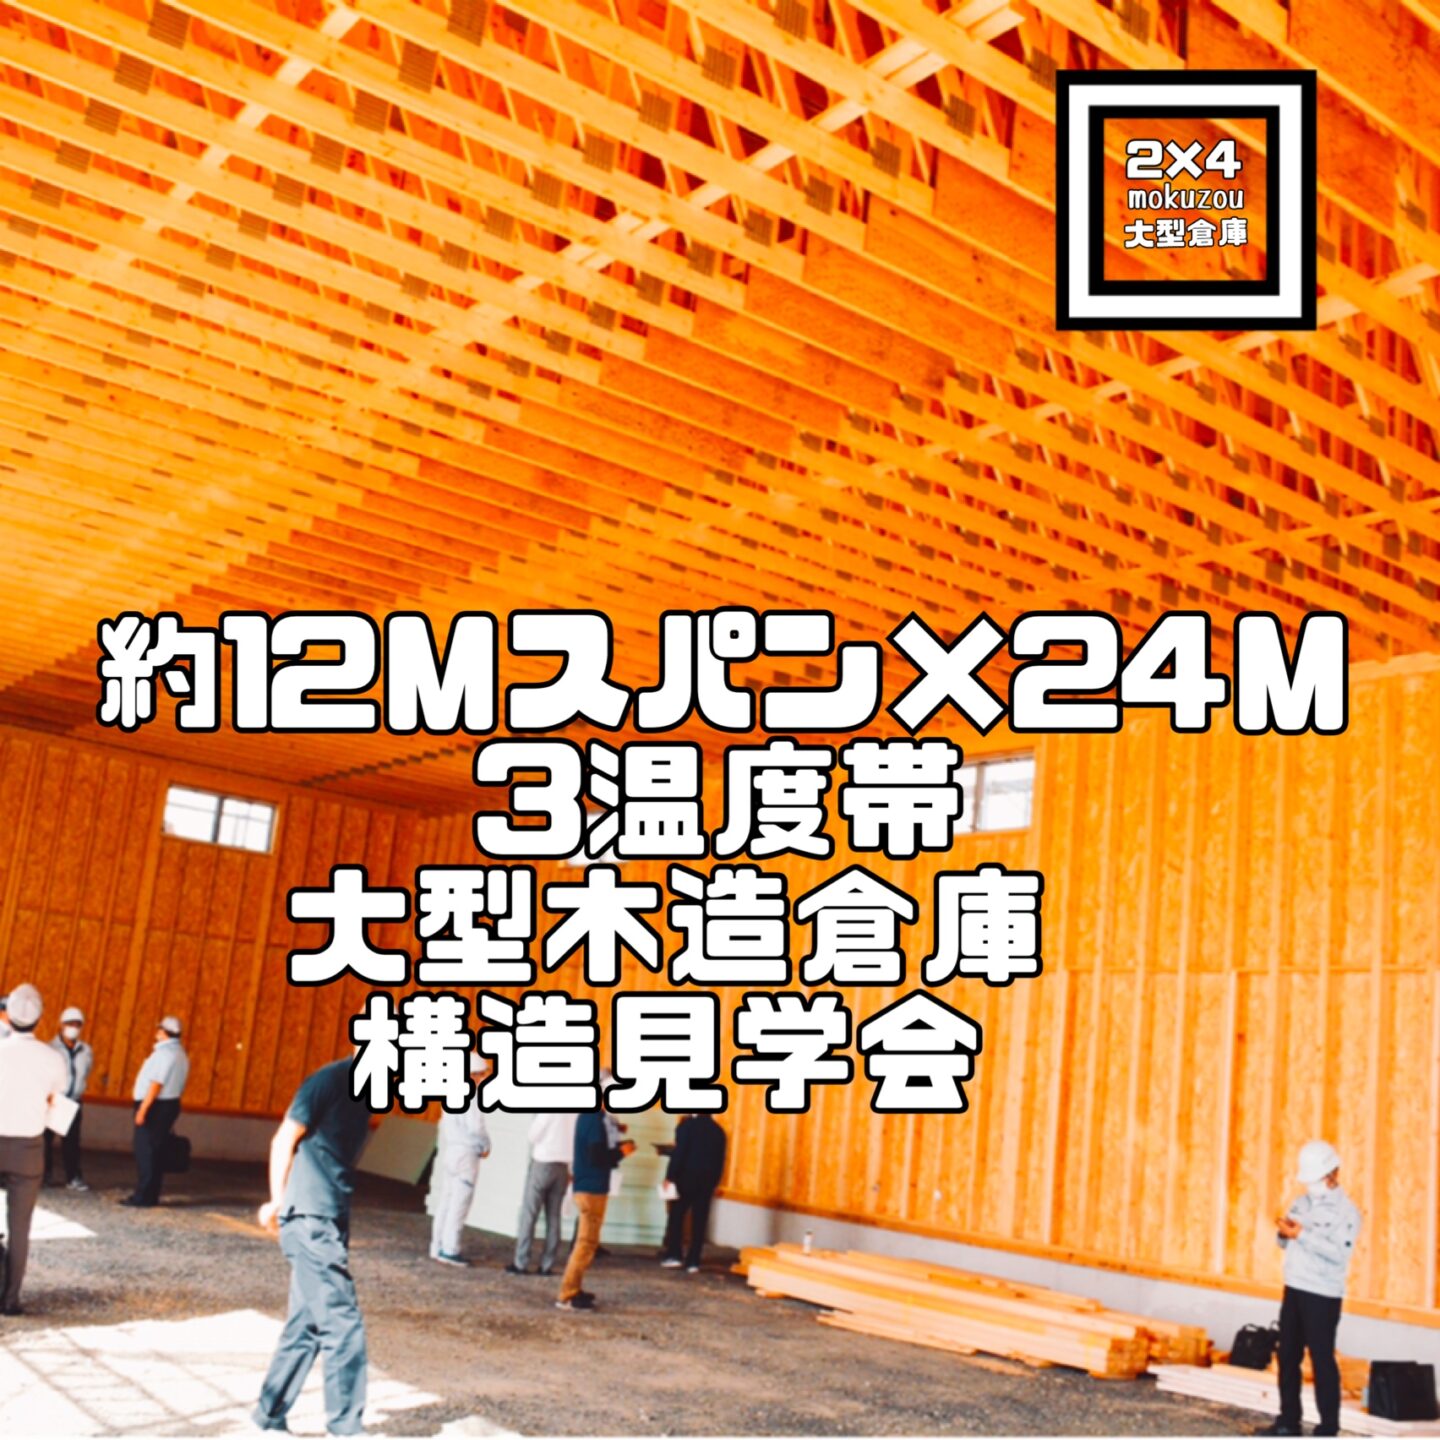 11.8mスパン×24.5m×天井高5.2mの 3つの温度帯 大型木造倉庫 構造見学会を開催しました